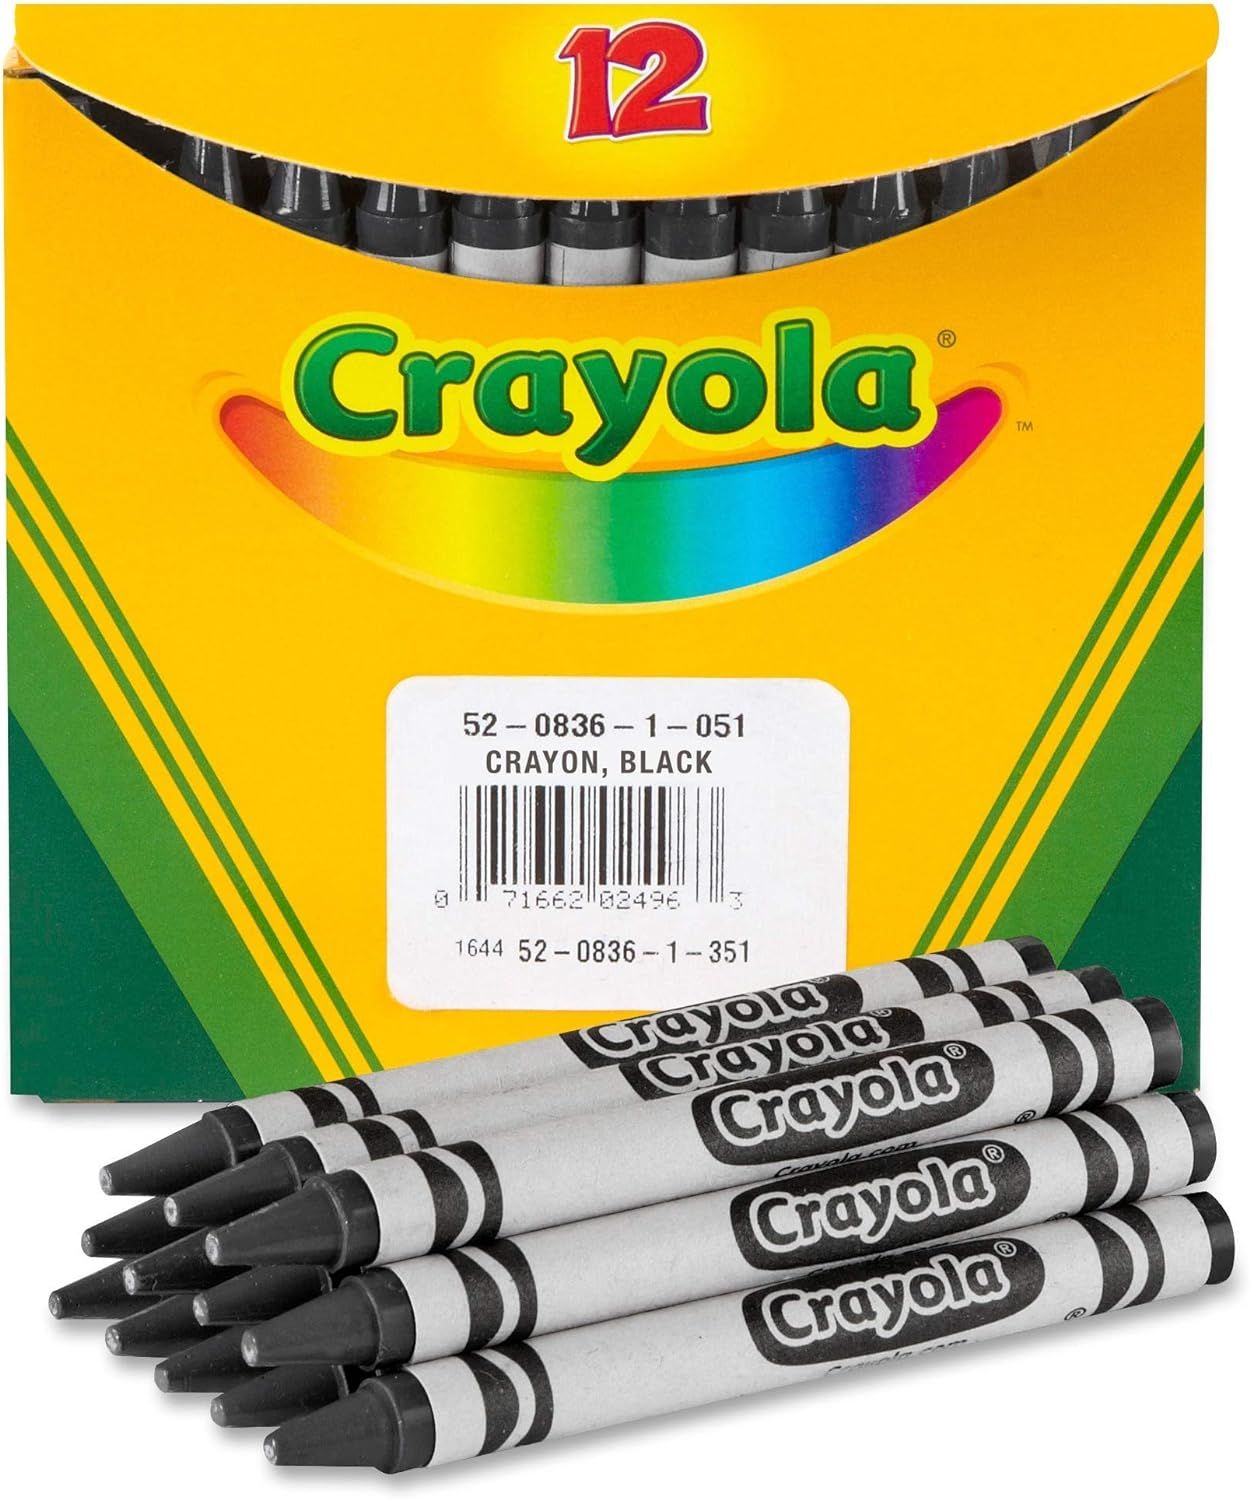 Crayola Crayons, Black, Single Color Crayon Refill, 12 Count Bulk Crayons, School Supplies | Amazon (US)